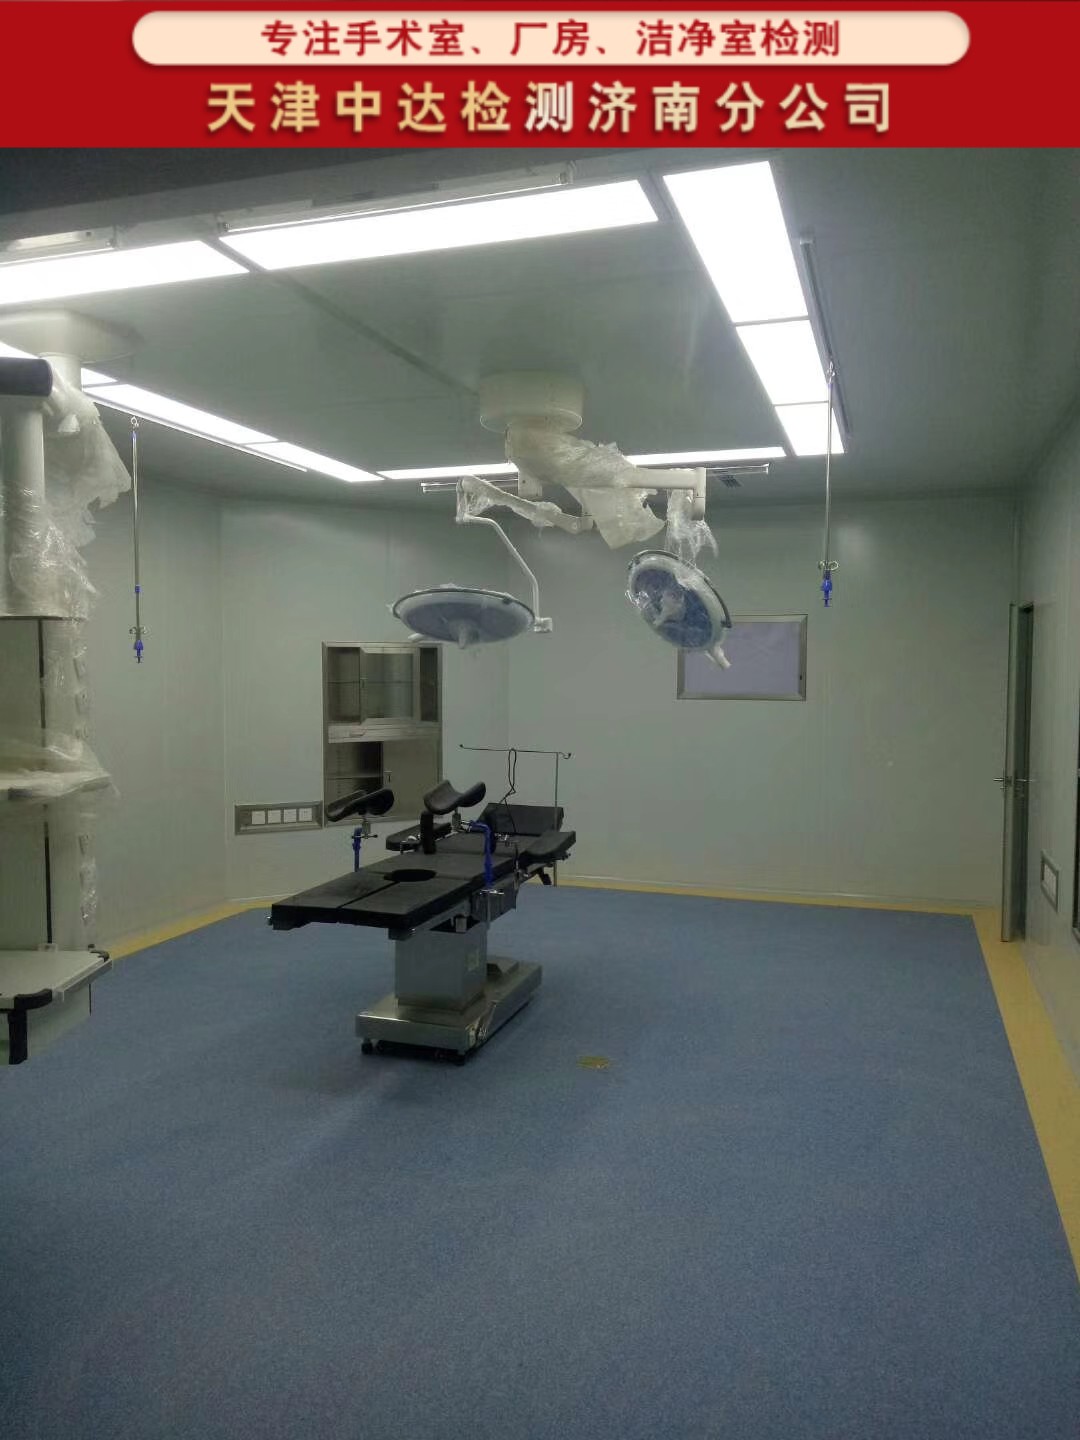 青岛李沧区人民医院手术室洁净度级别检测内容和方法-天津中达检测济南分公司